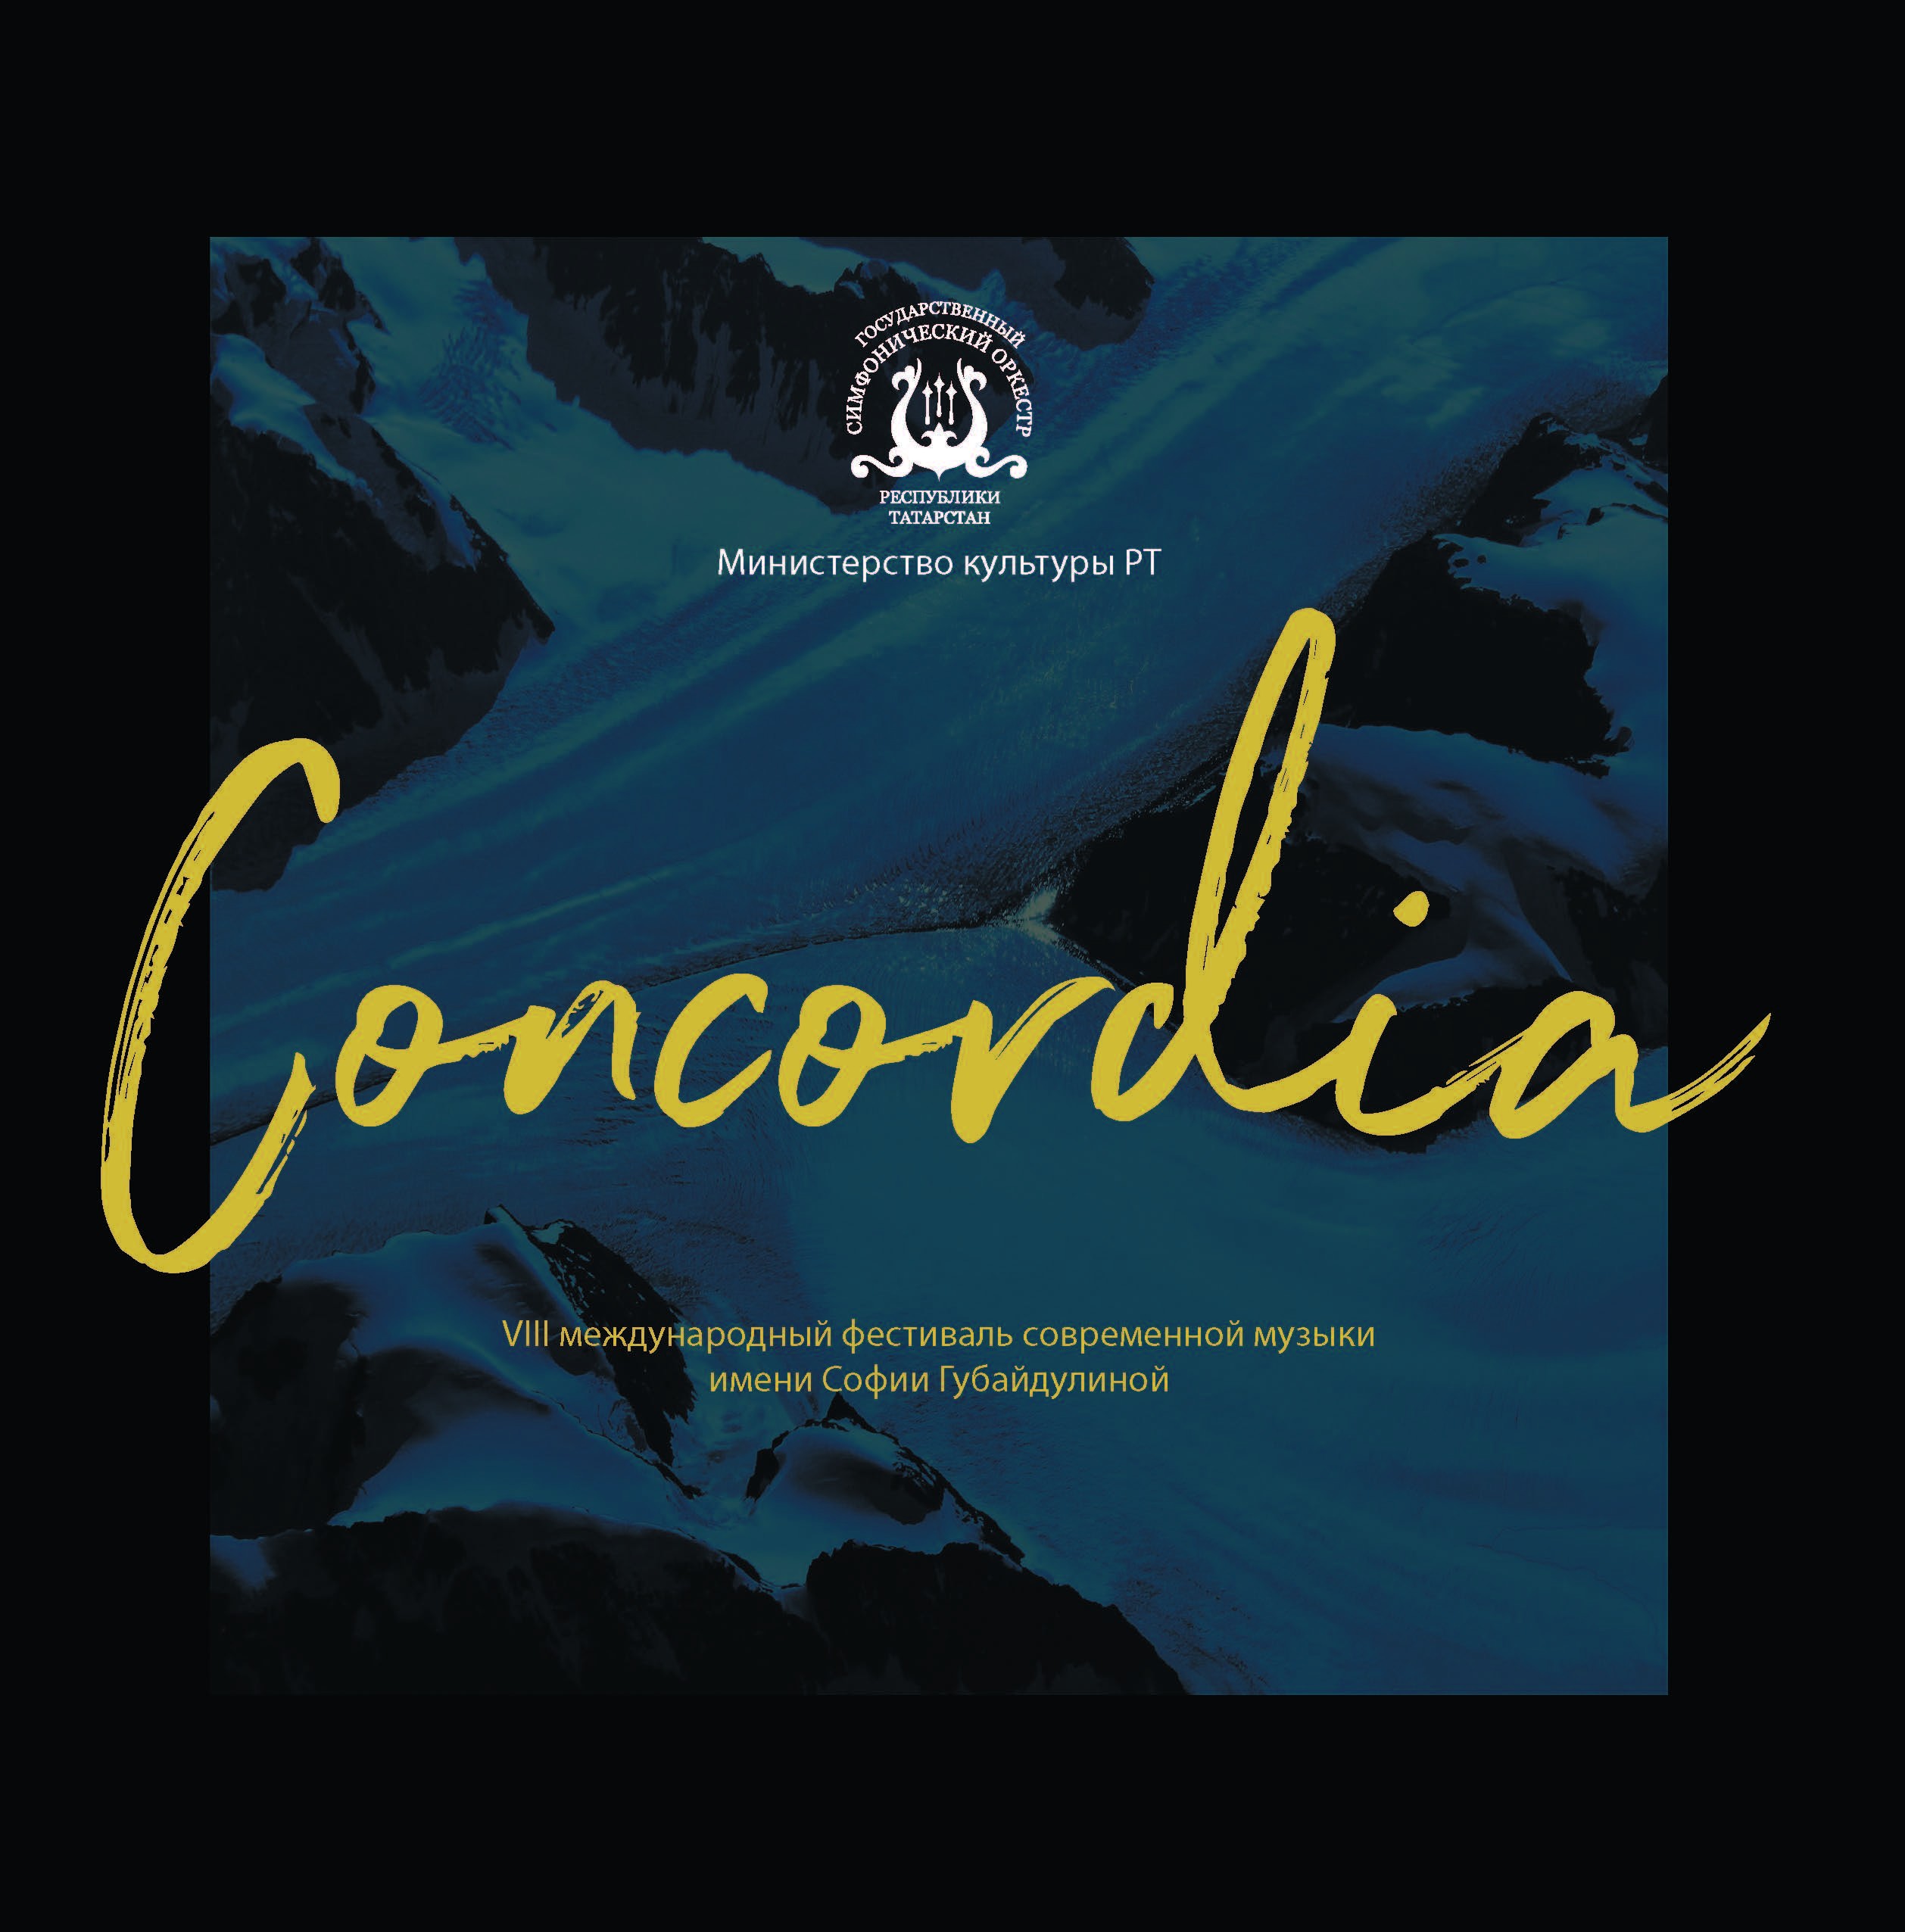 VIII Международный фестиваль современной музыки имени Софии Губайдулиной Concordia